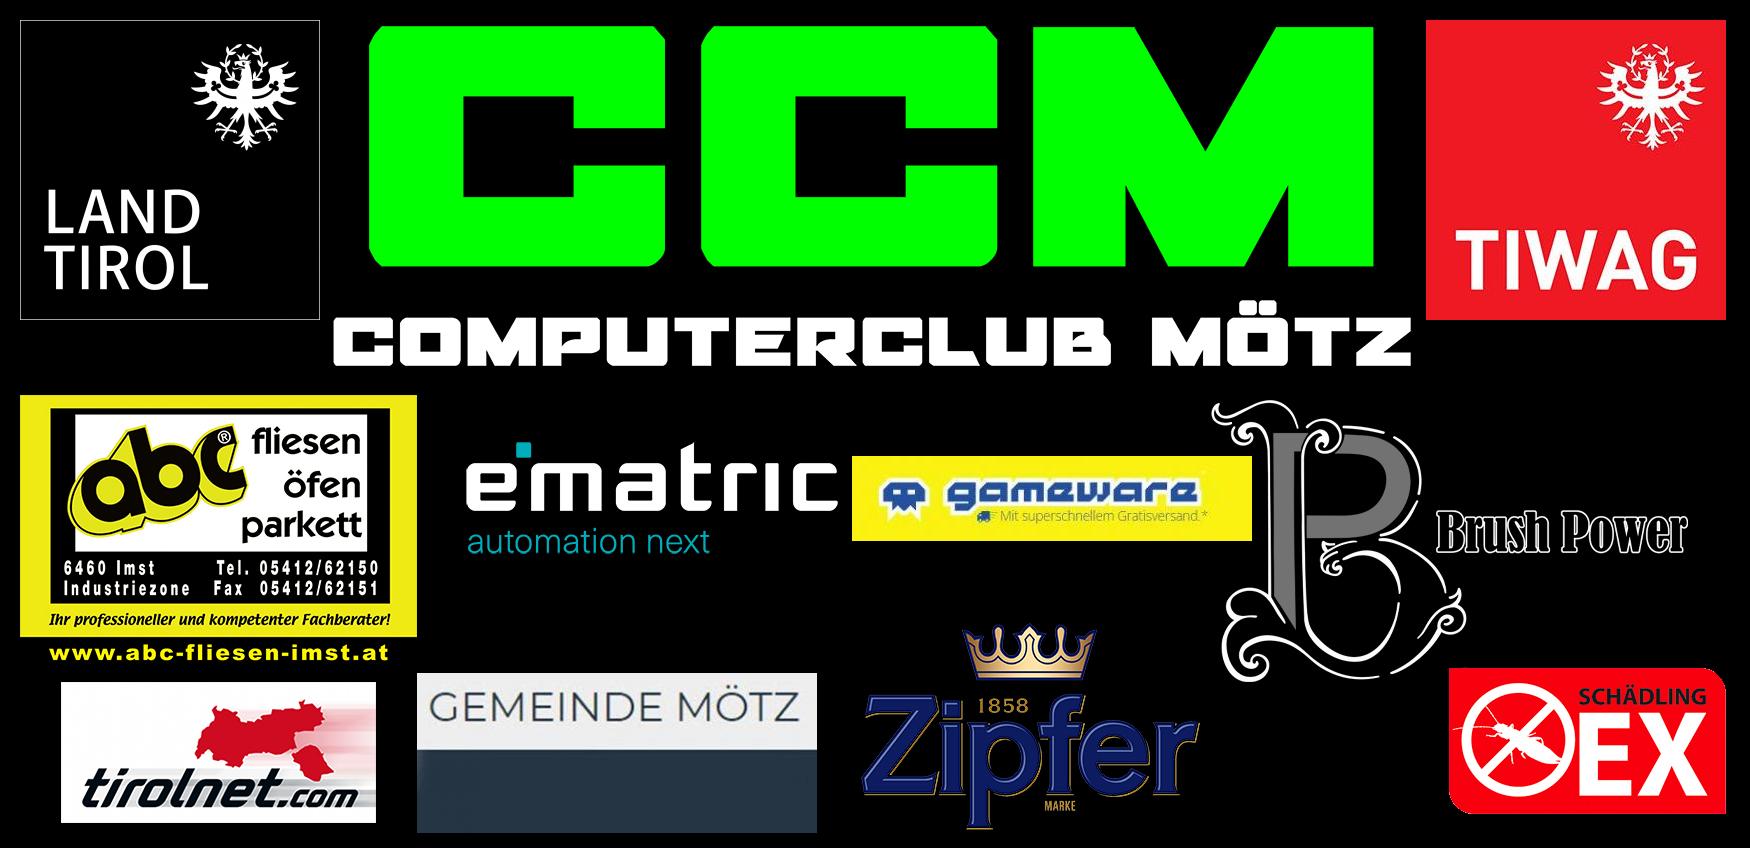 ccm_sponsor_overview.jpg